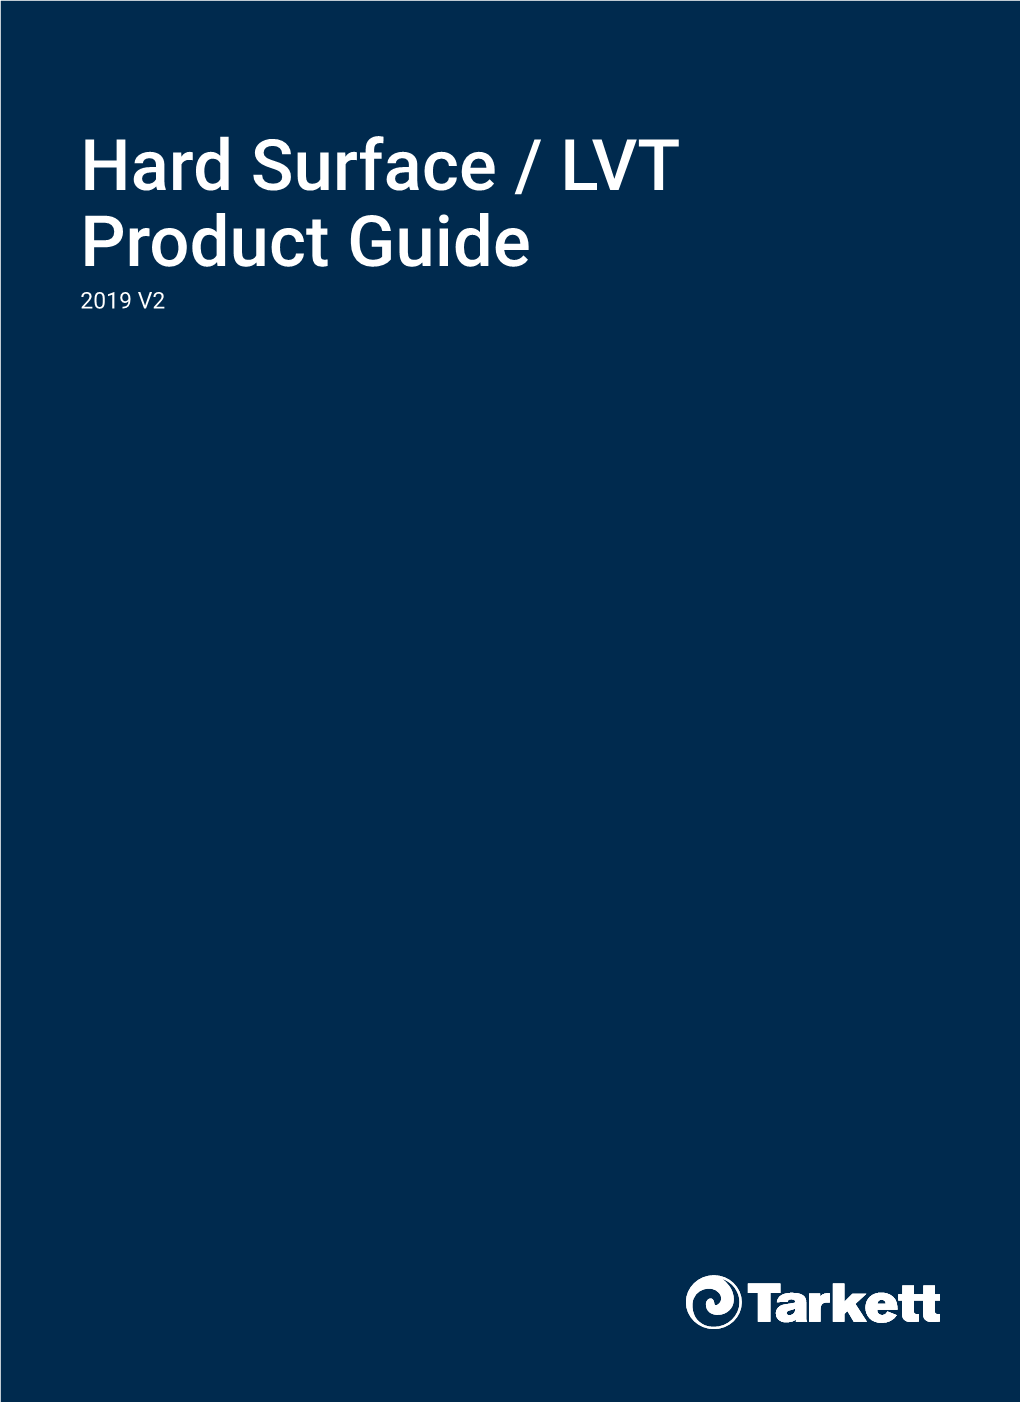 Hard Surface / LVT Product Guide 2019 V2